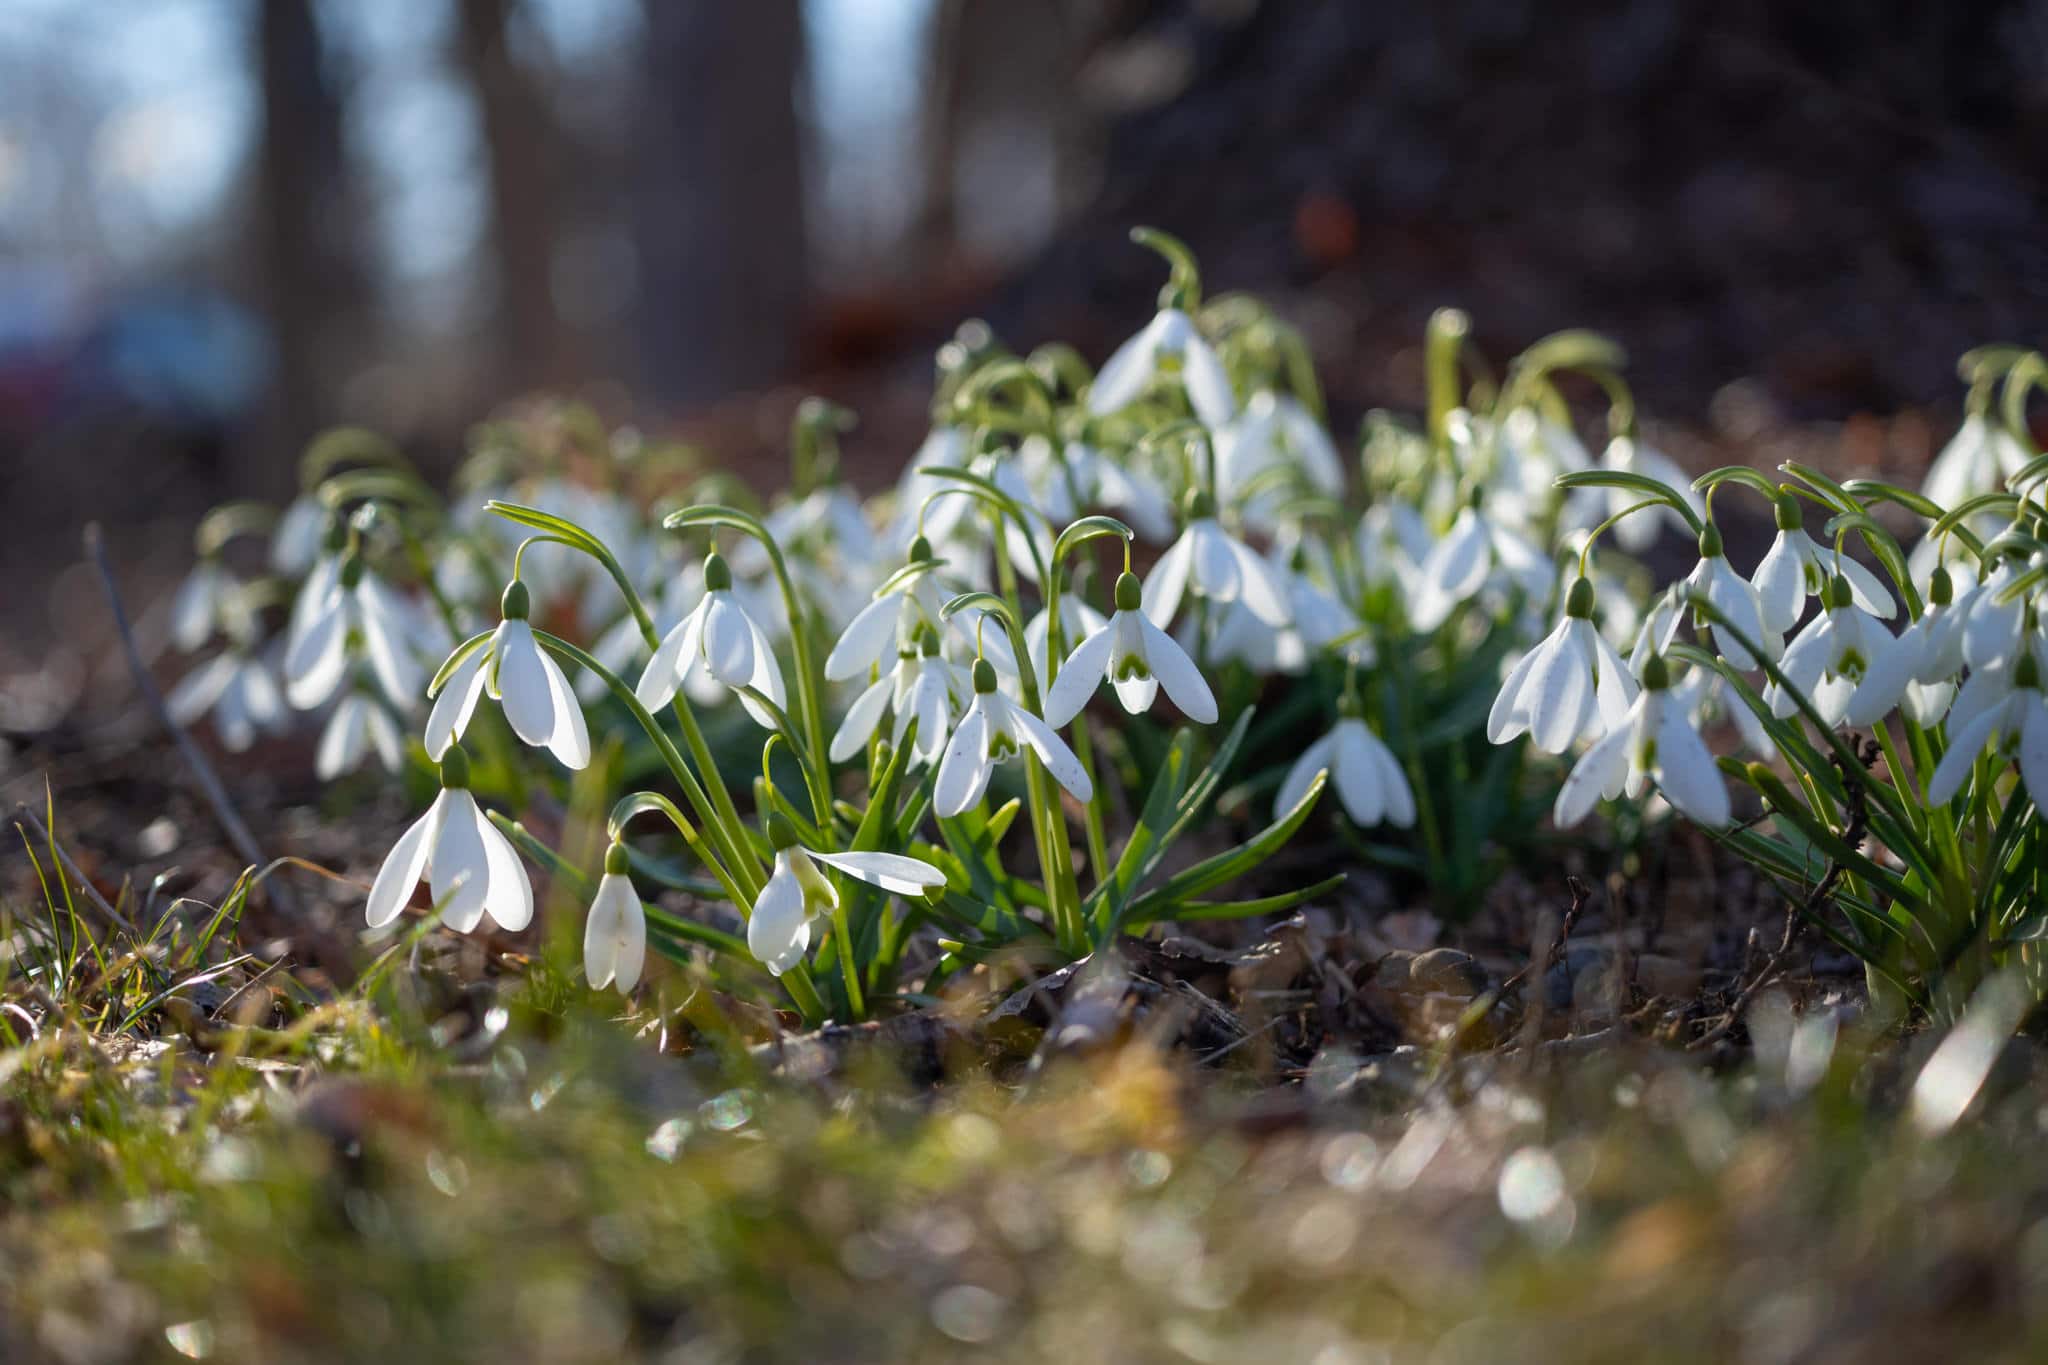 Snowdrops: Precocious Spring